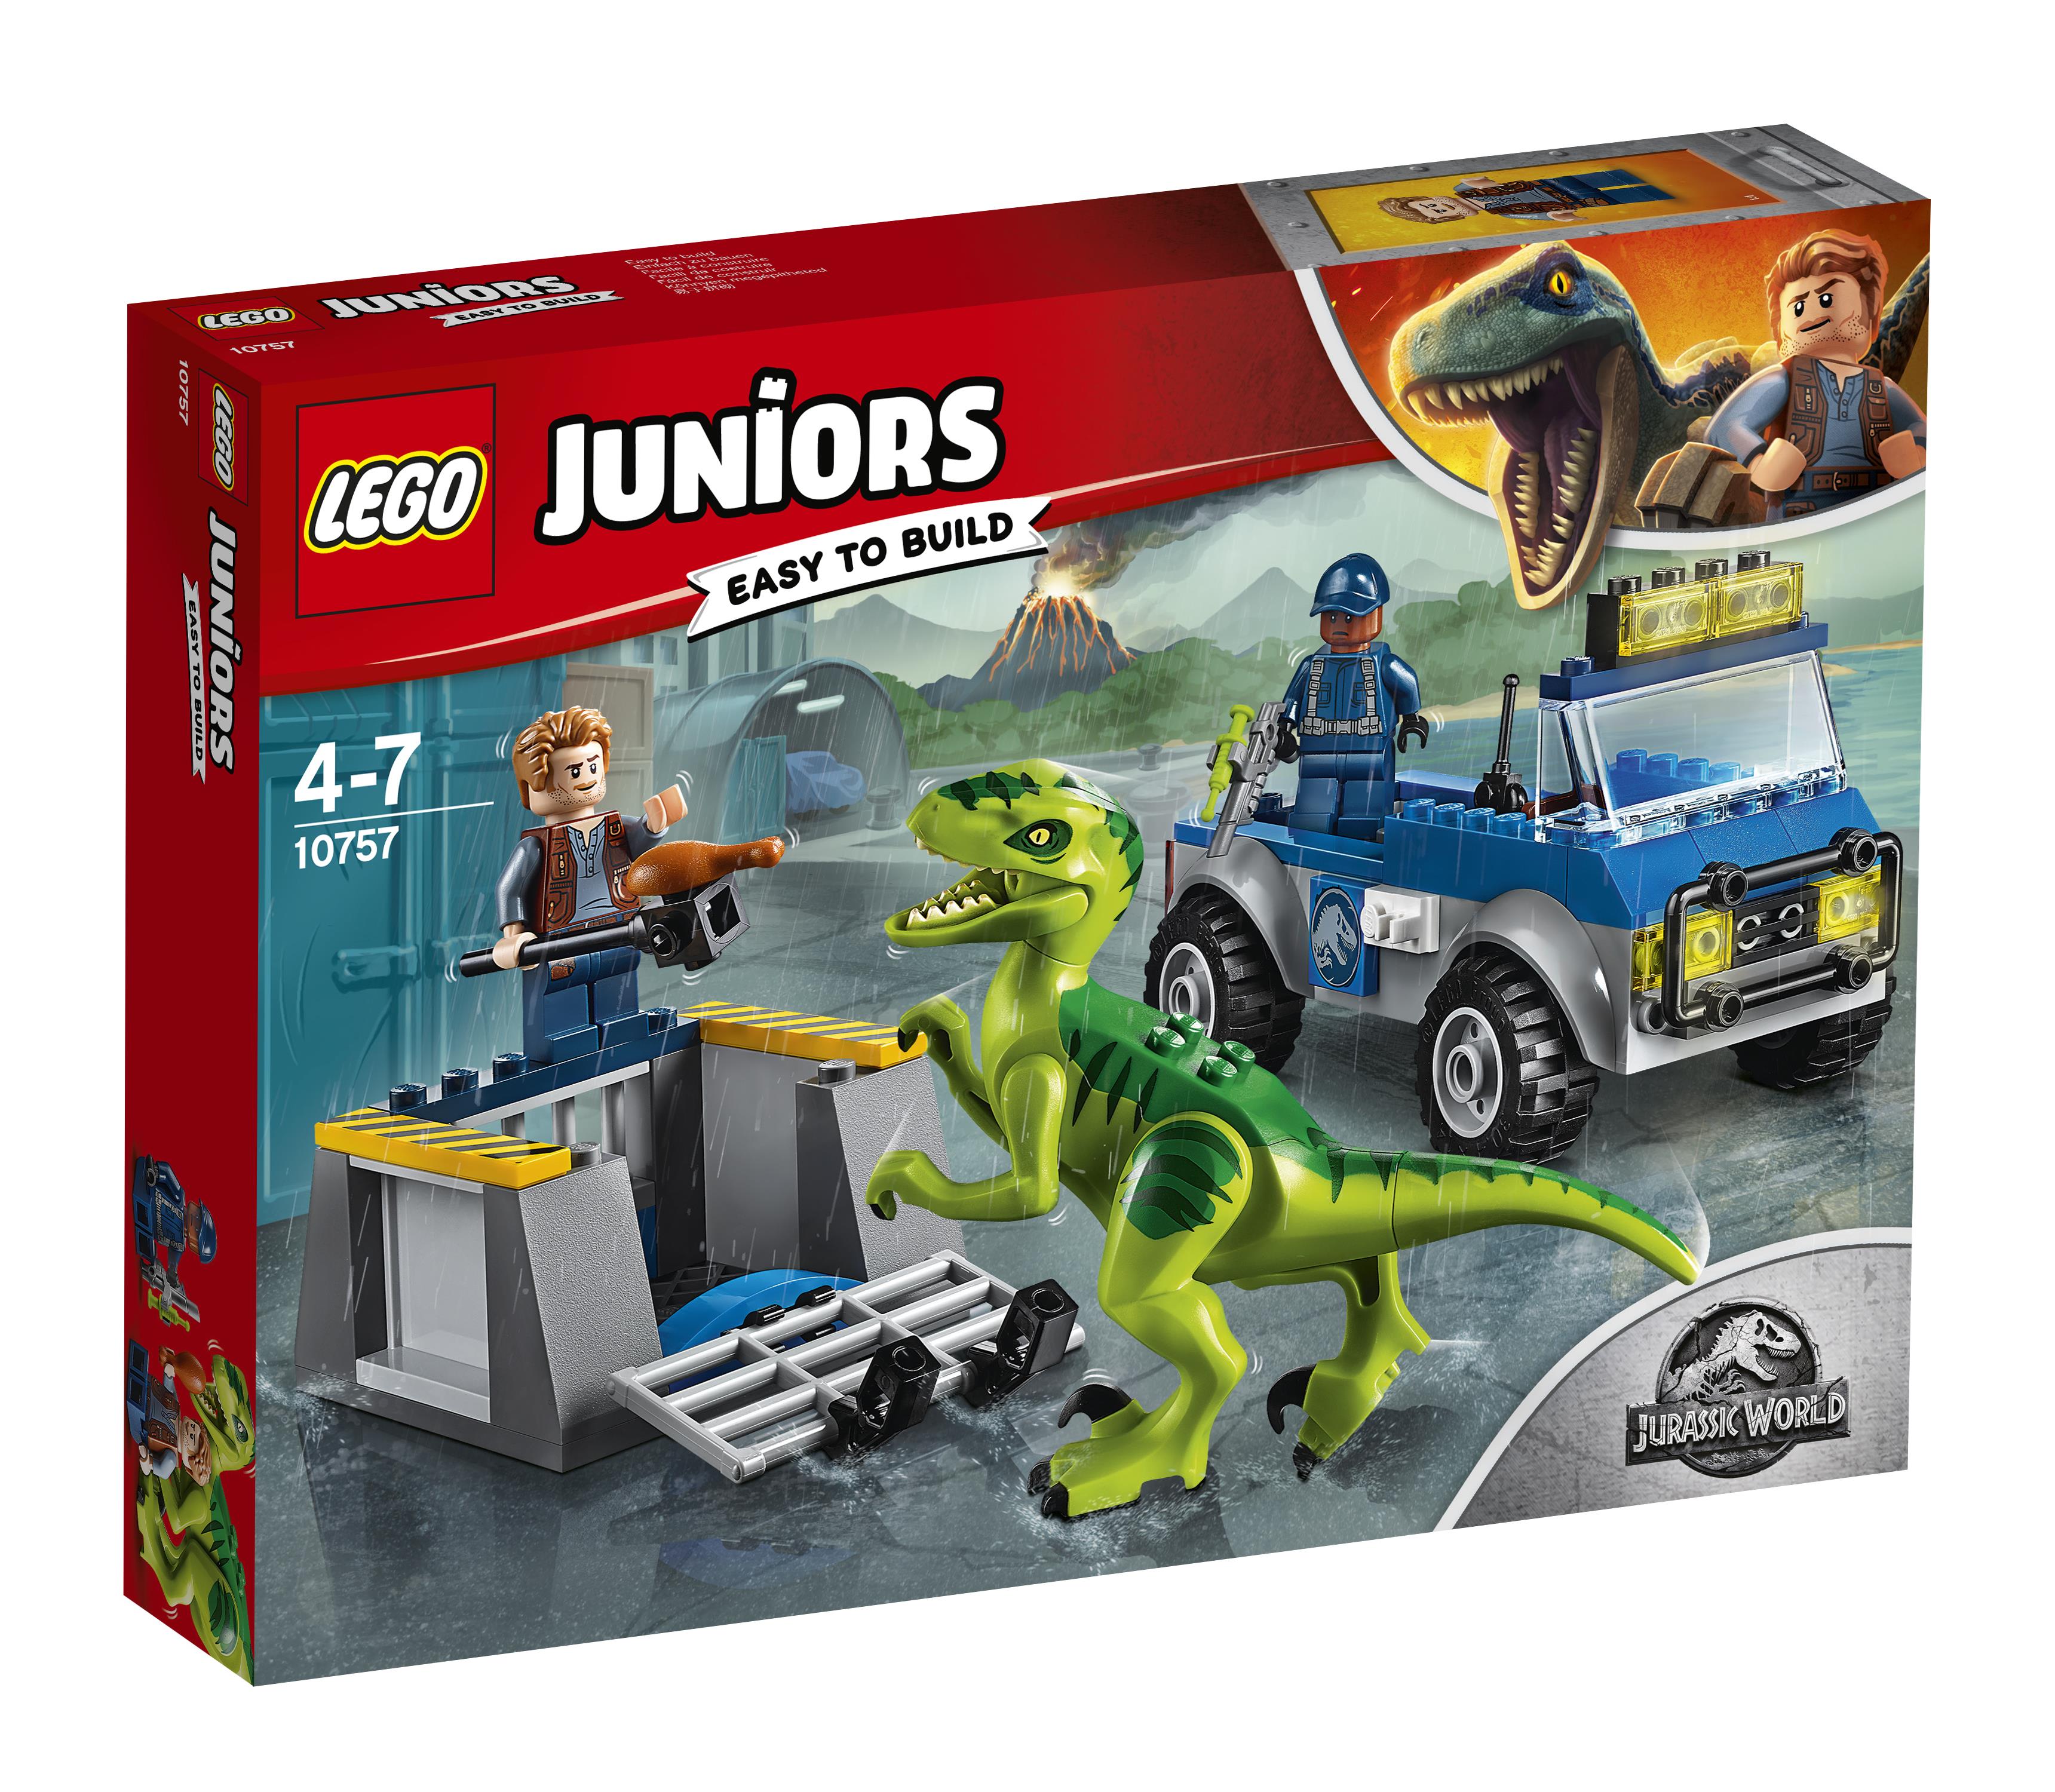 LEGO Juniors Camion Per